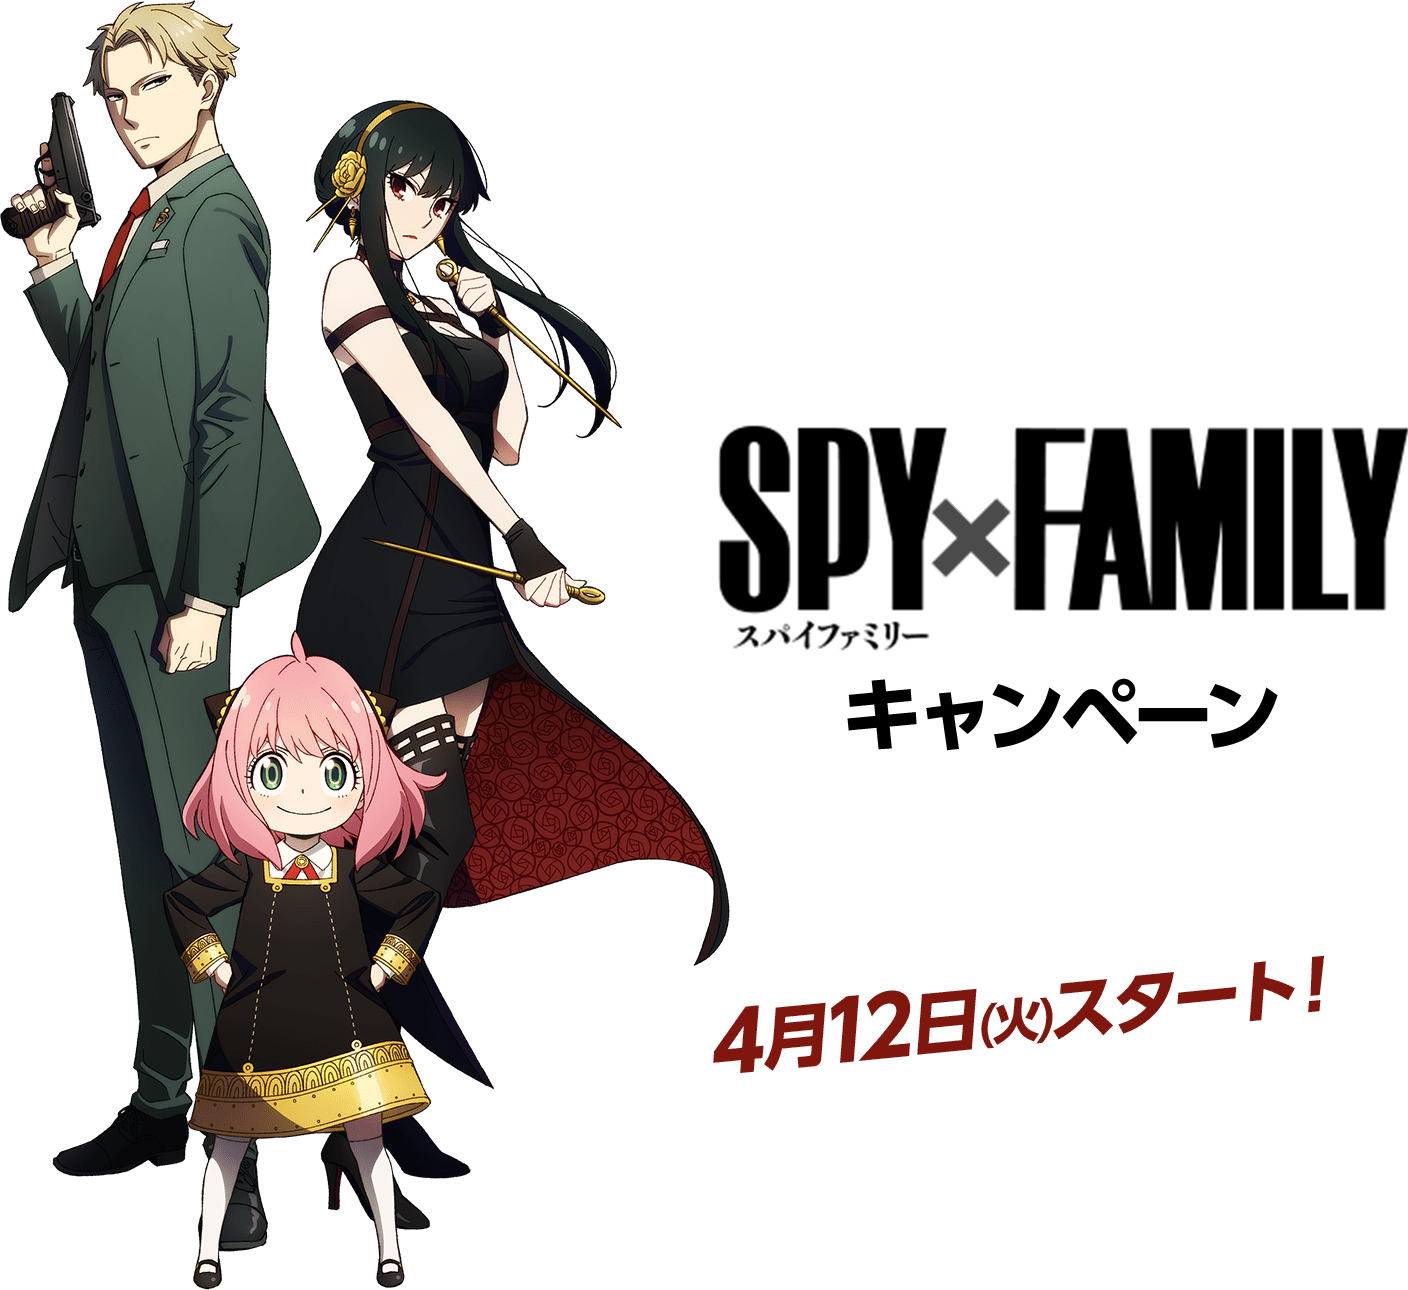 【间谍过家家】【SPY X FAMILY】官方公式壁纸&素材合集